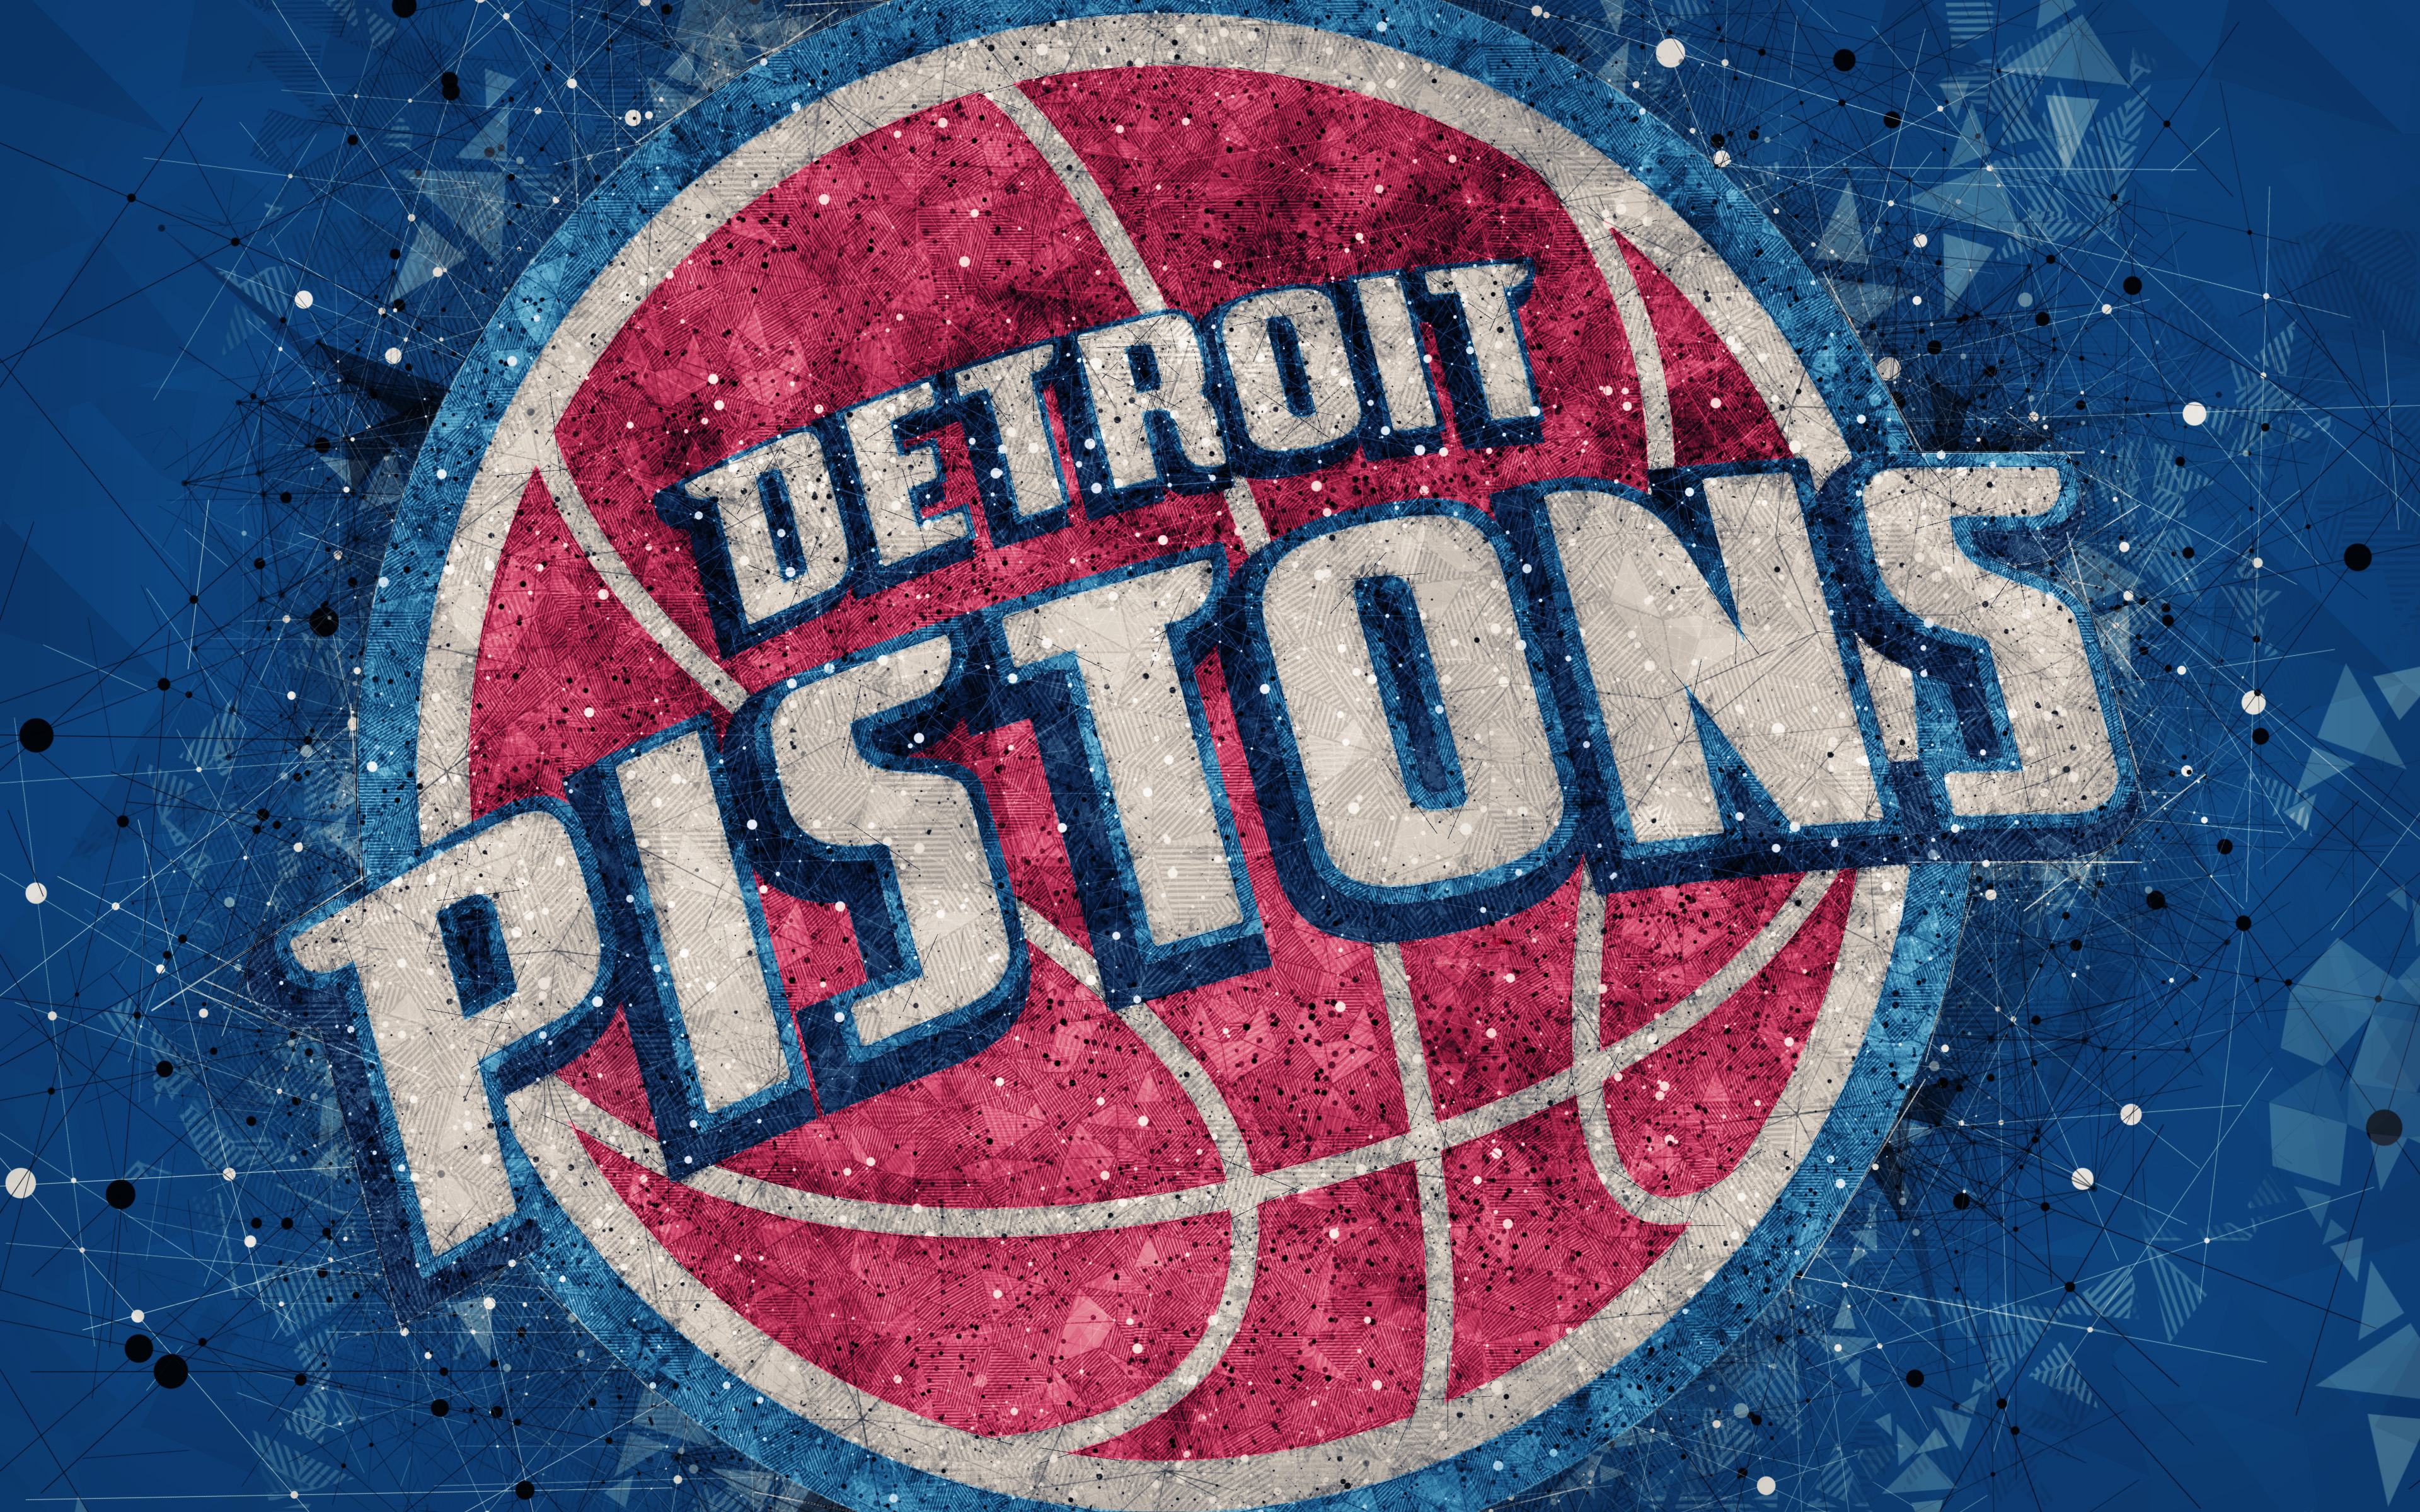 Detroit pistons. Детройт Пистонс лого. Детройт Пистонс 90. Детройт Пистонс 2000. Детройт логотип НБА.